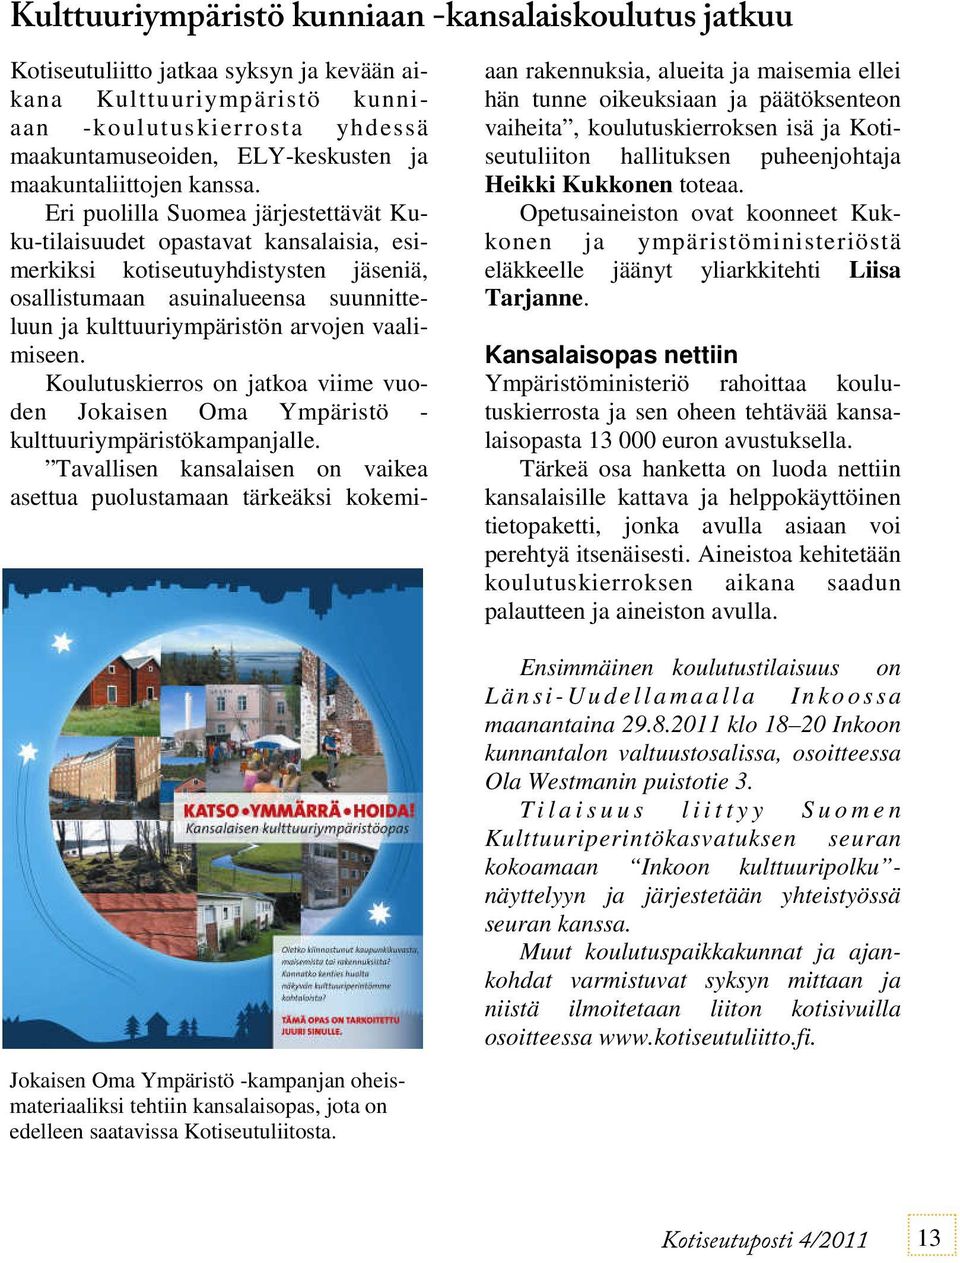 Eri puolilla Suomea järjestettävät Kuku-tilaisuudet opastavat kansalaisia, esimerkiksi kotiseutuyhdistysten jäseniä, osallistumaan asuinalueensa suunnitteluun ja kulttuuriympäristön arvojen